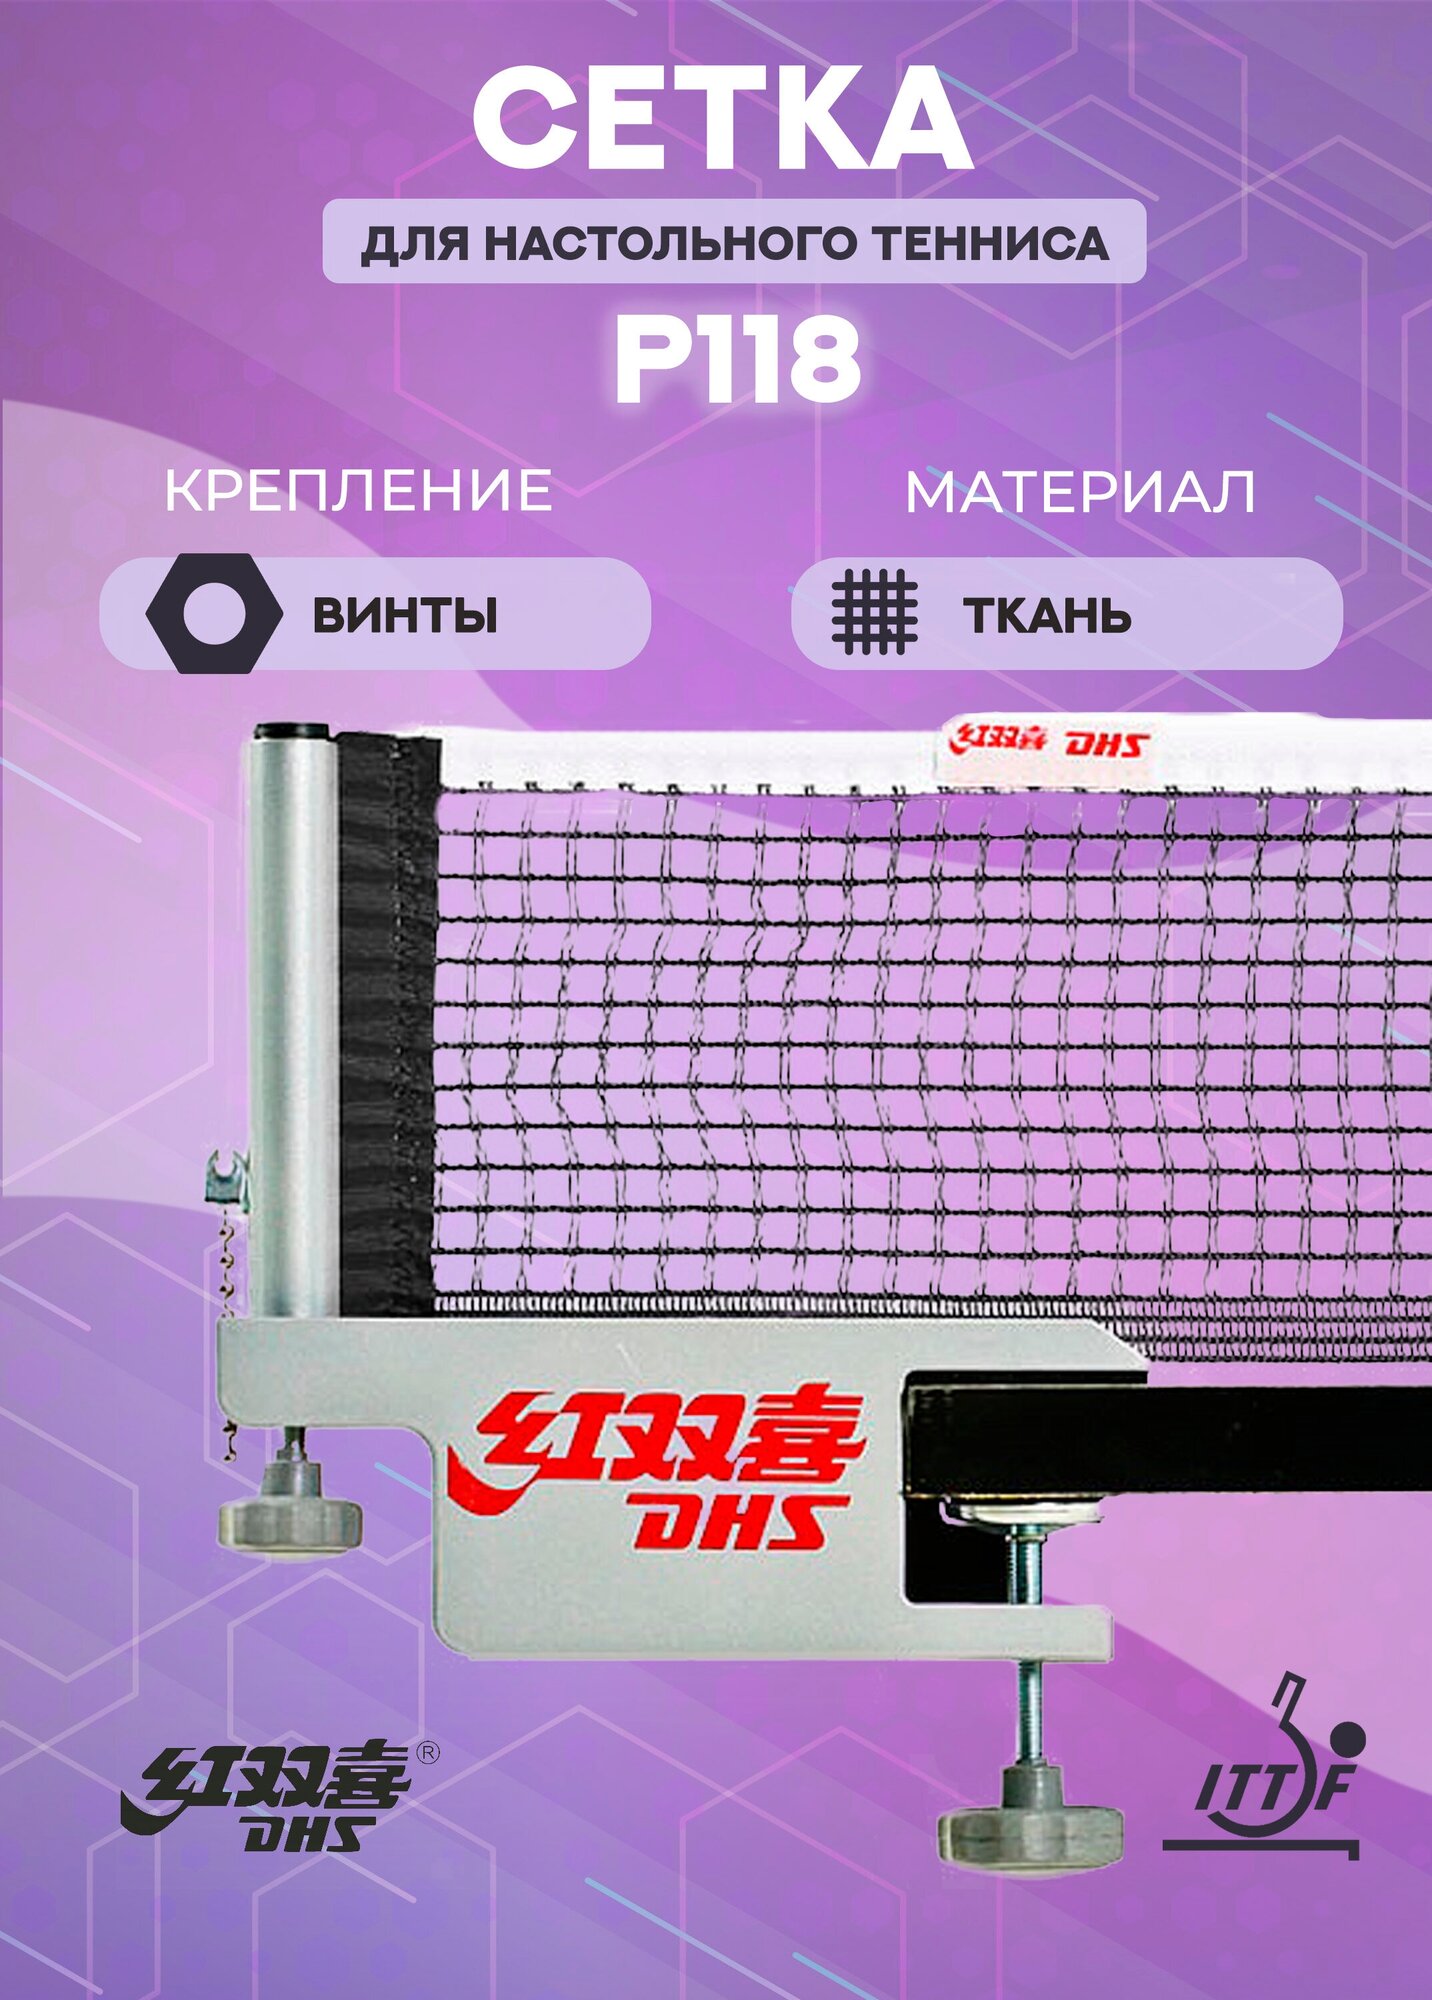 Сетка для настольного тенниса DHS P118 ITTF